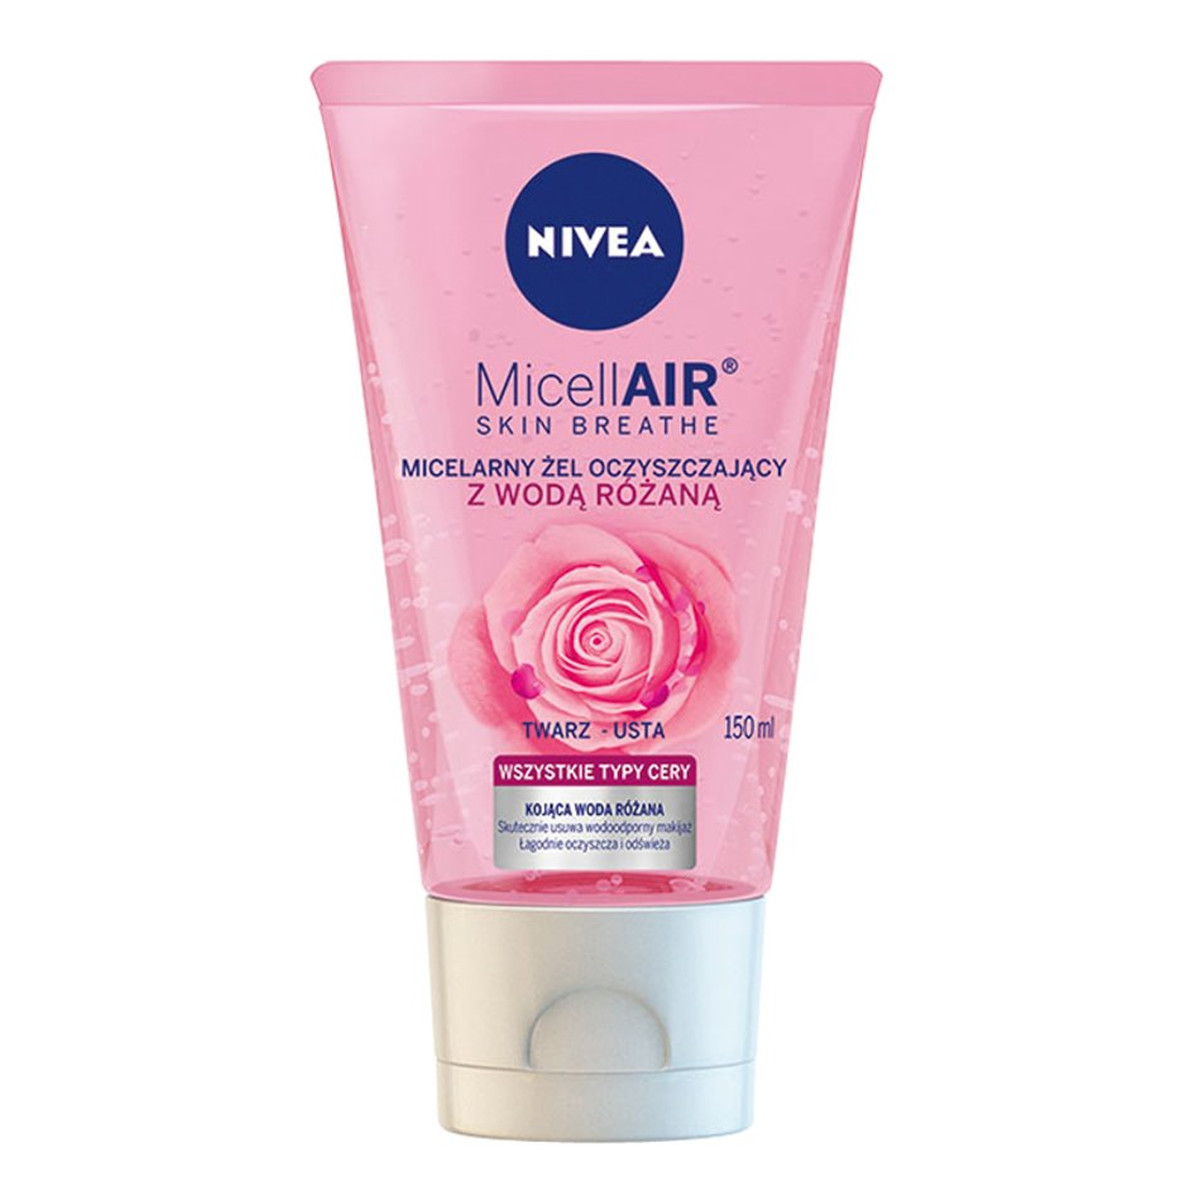 Nivea Micell Air Skin Breathe Micelarny Żel oczyszczający z Wodą Różaną 150ml